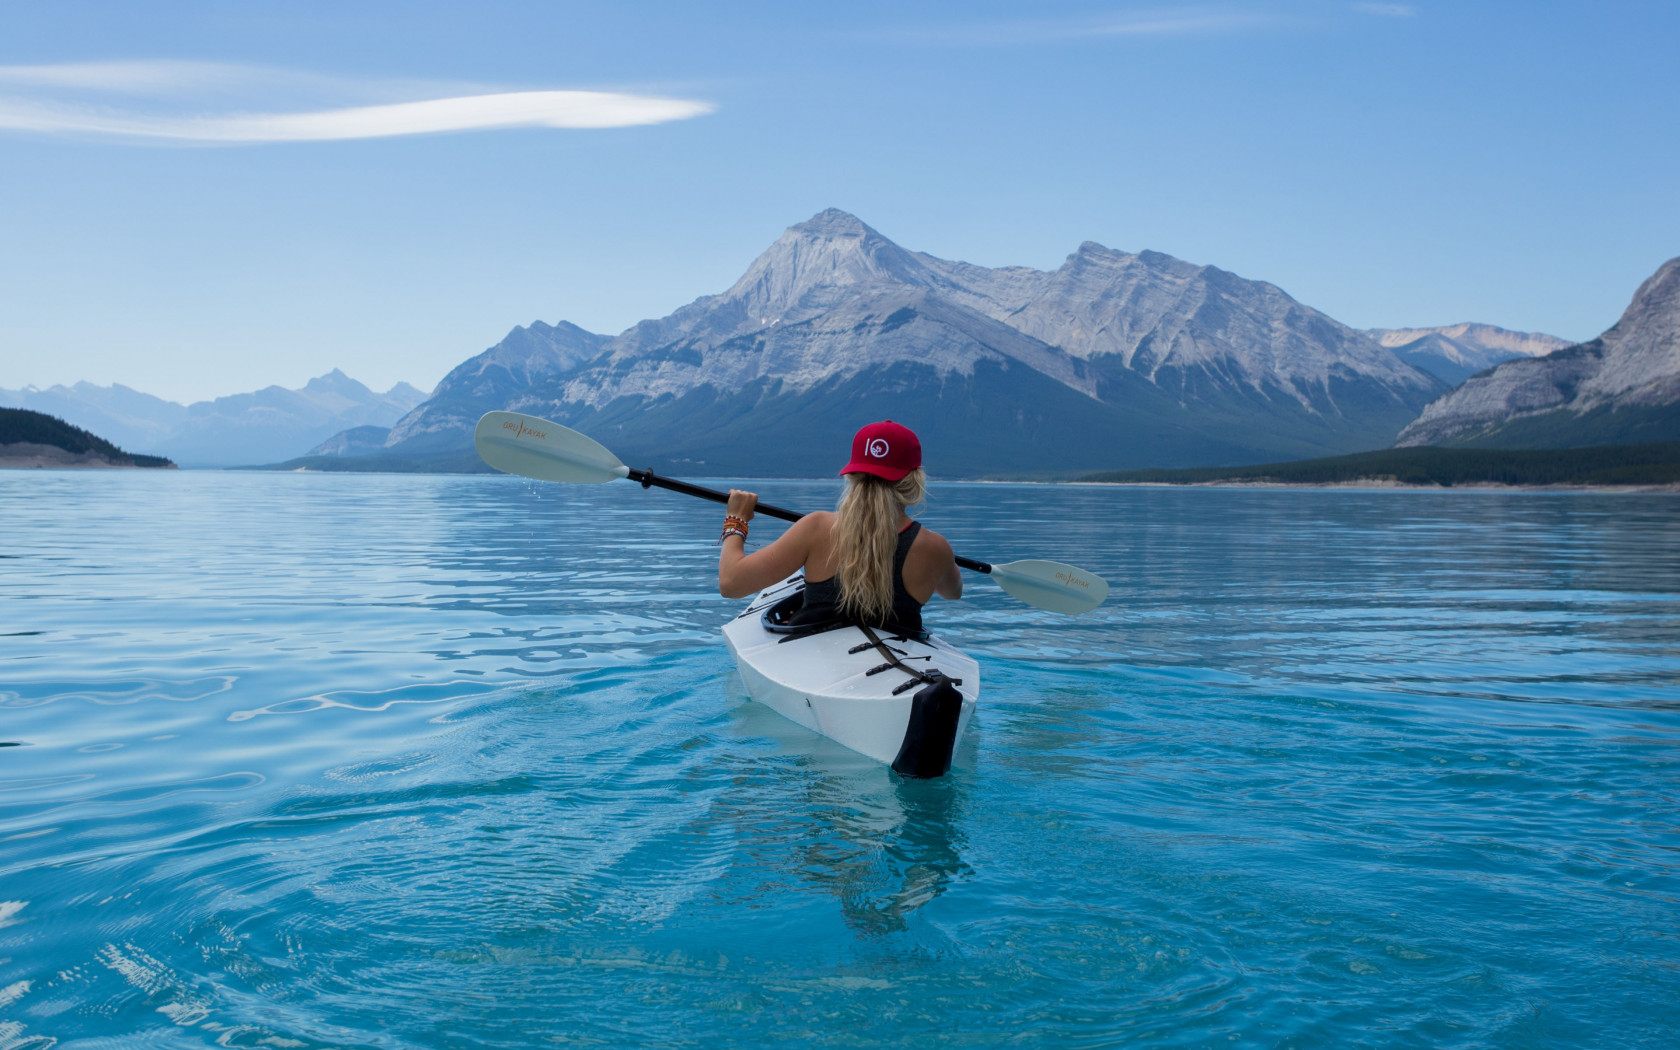 Trip with kayak on lake wallpaper 1680x1050